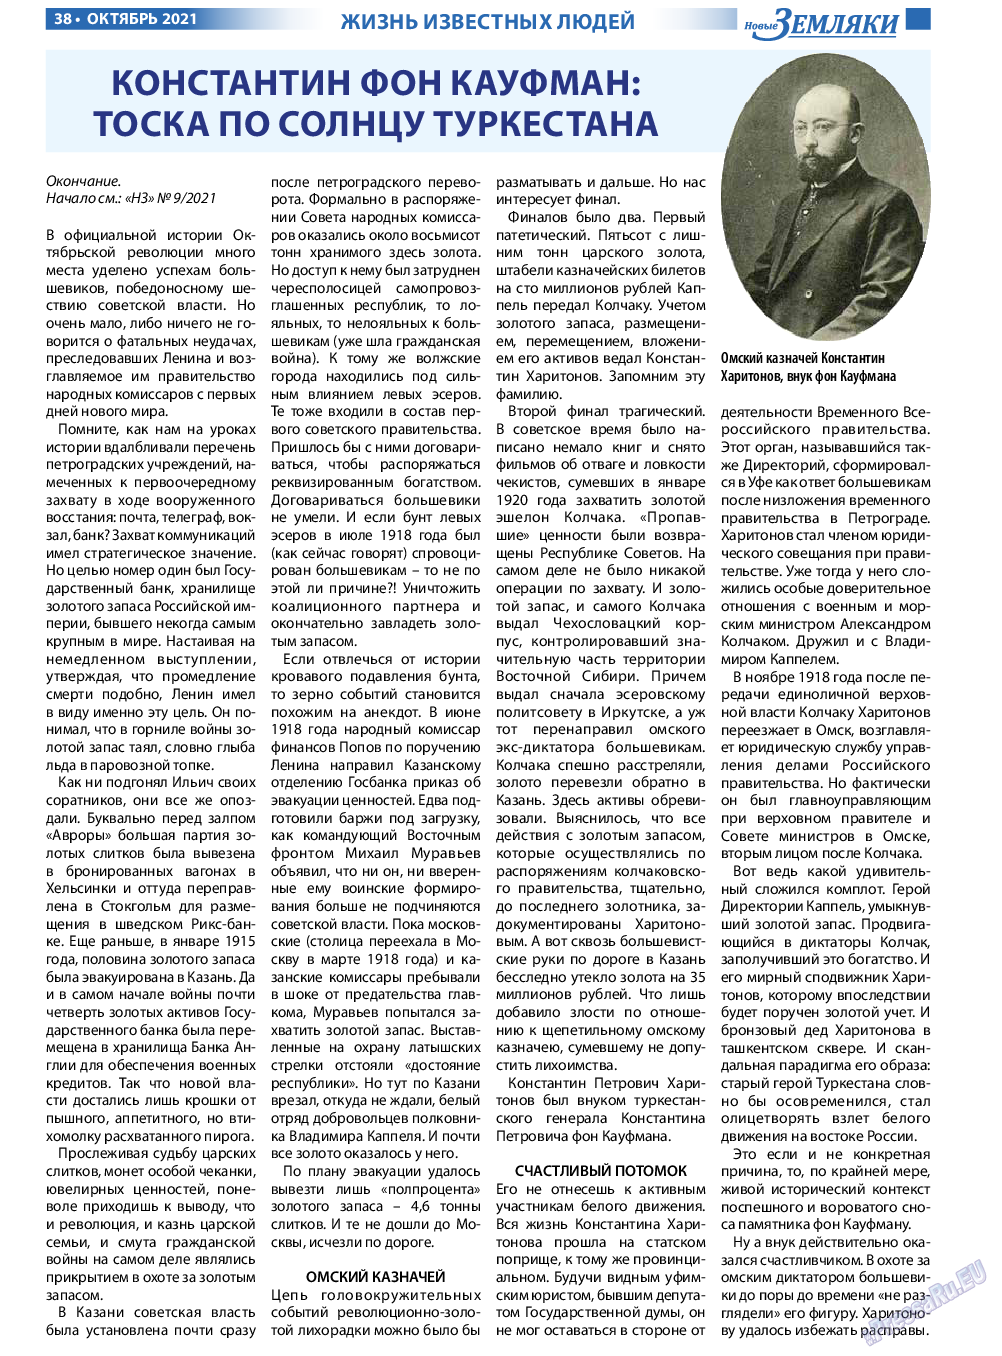 Новые Земляки, газета. 2021 №10 стр.38